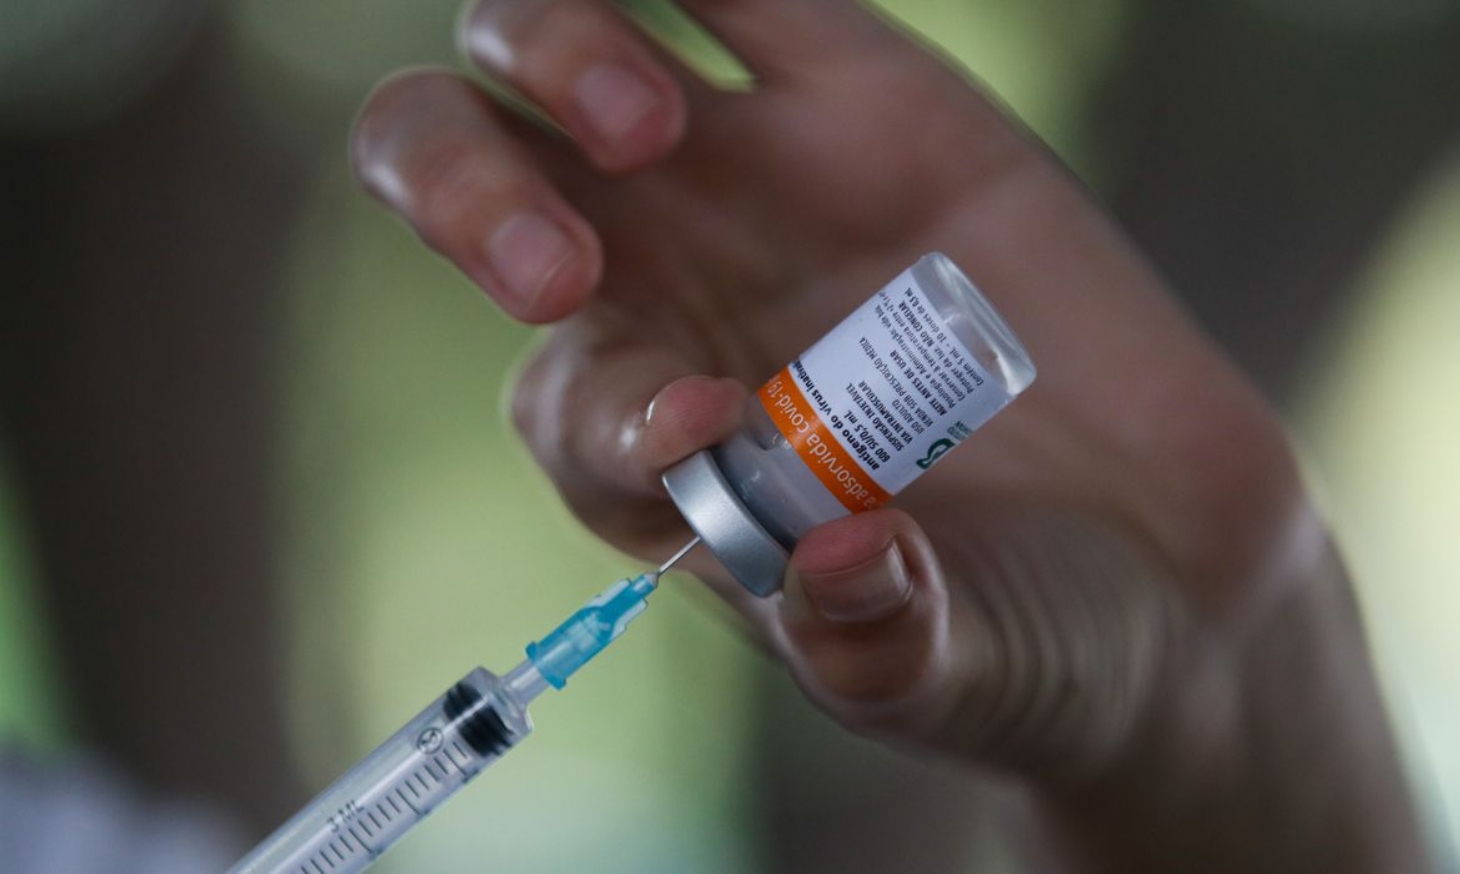 SP mantém ritmo de vacinação contra Covid-19 superior a 500 mil doses por dia | Jornal da Orla